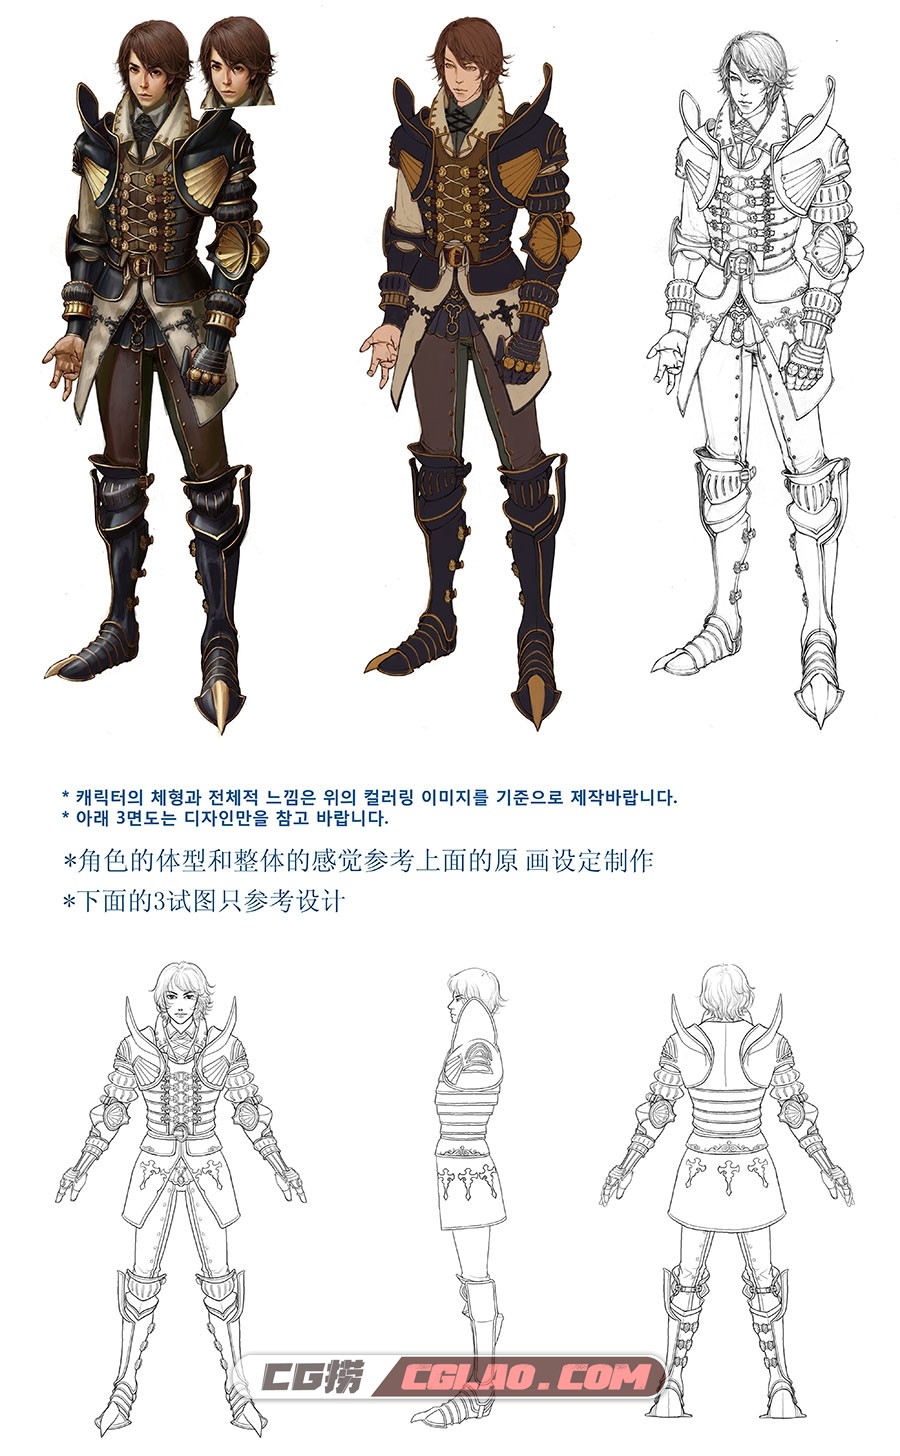 韩式游戏角色概念设计原画线稿 39P,Knight---Cloth-006--concept副本.jpg